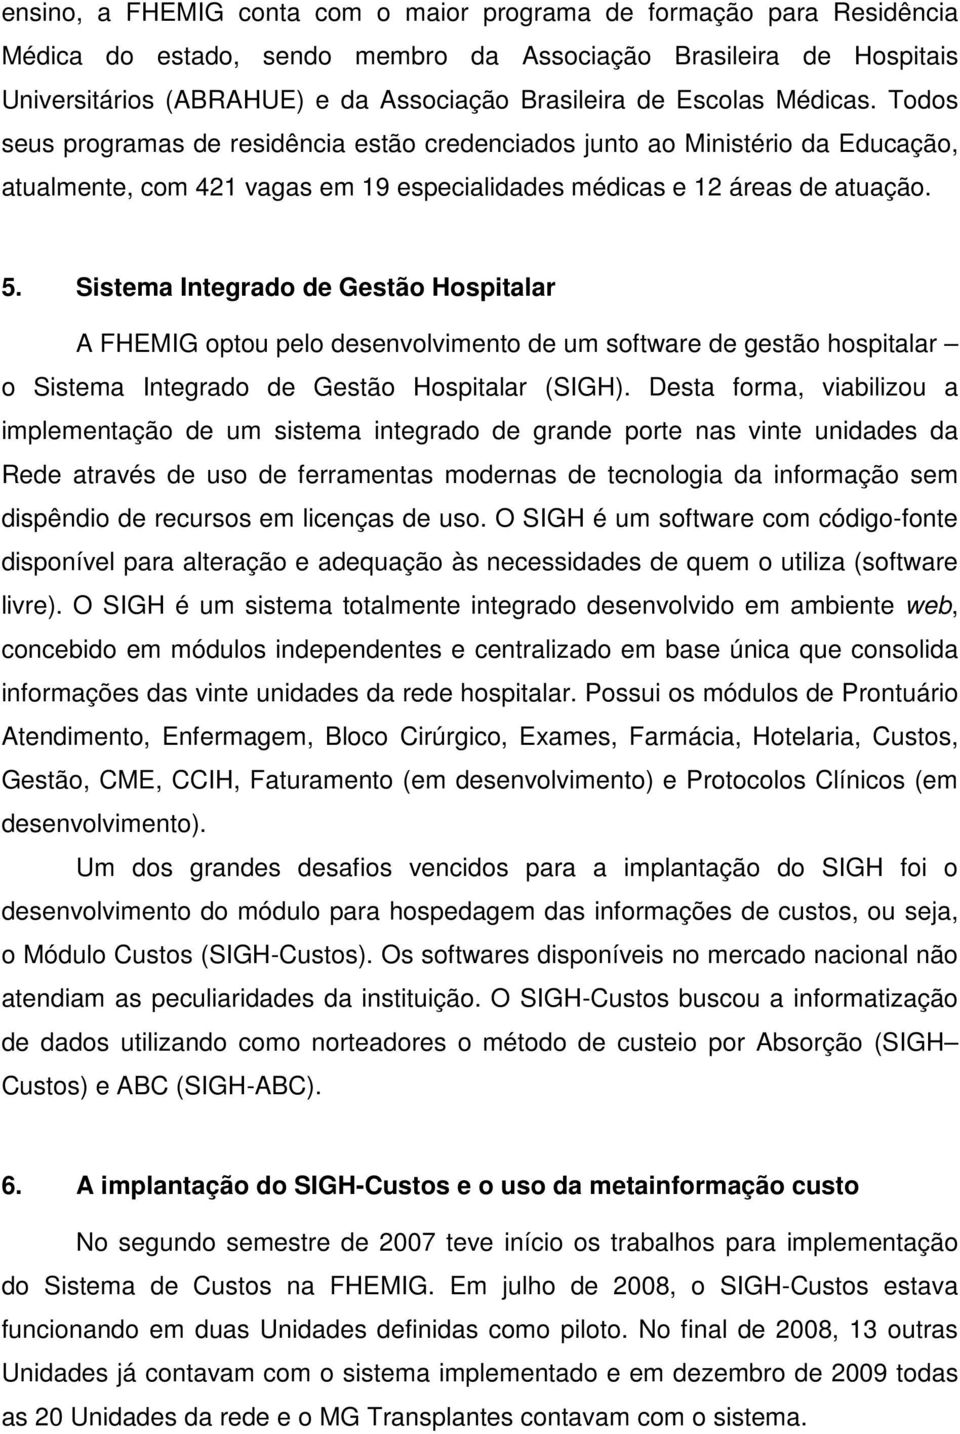 Sistema Integrado de Gestão Hospitalar A FHEMIG optou pelo desenvolvimento de um software de gestão hospitalar o Sistema Integrado de Gestão Hospitalar (SIGH).